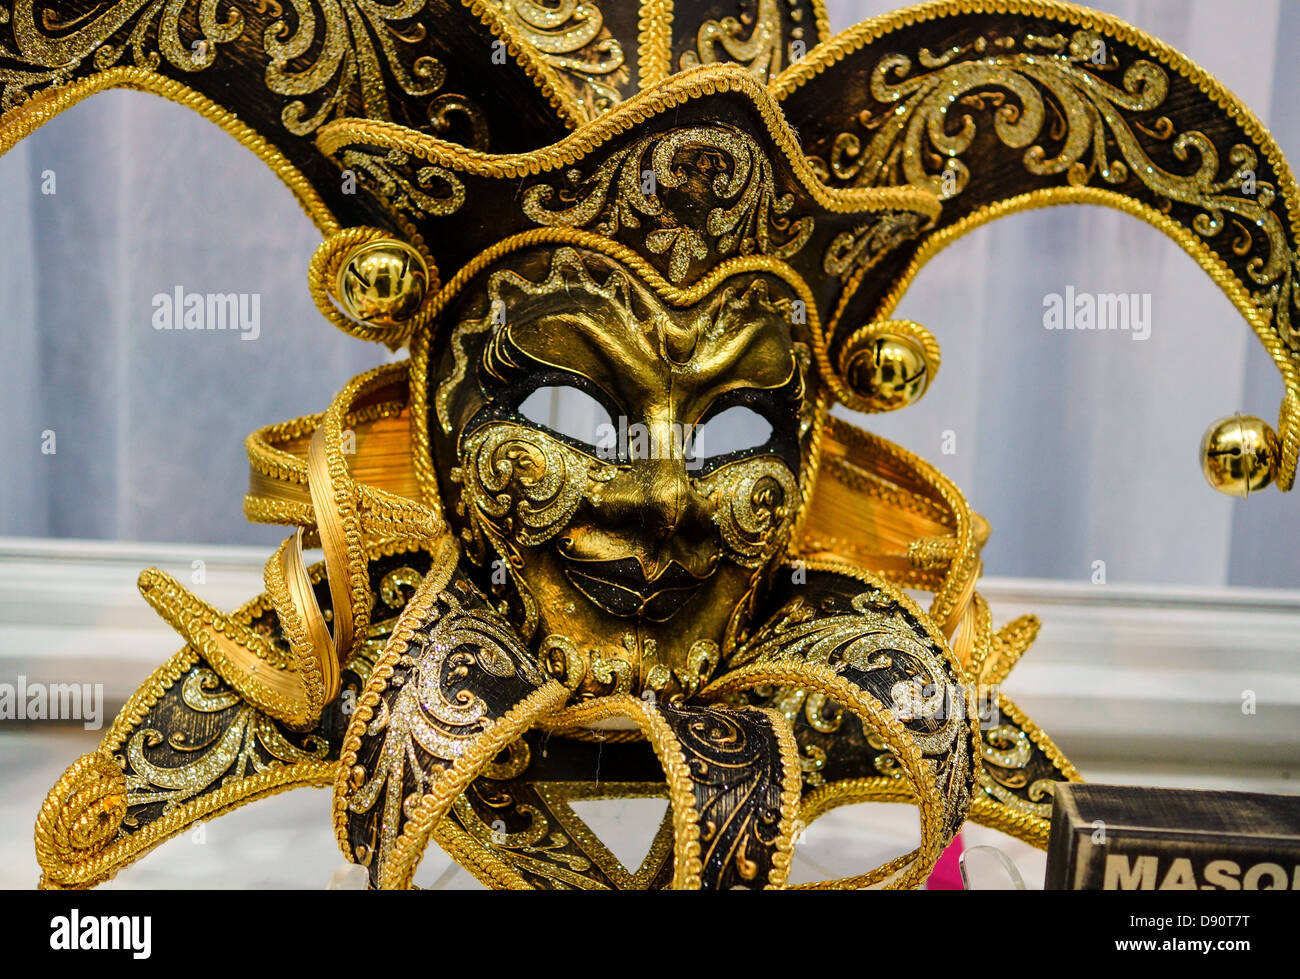 Masque de Mardi Gras à l'affiche à New Orleans, LA Banque D'Images